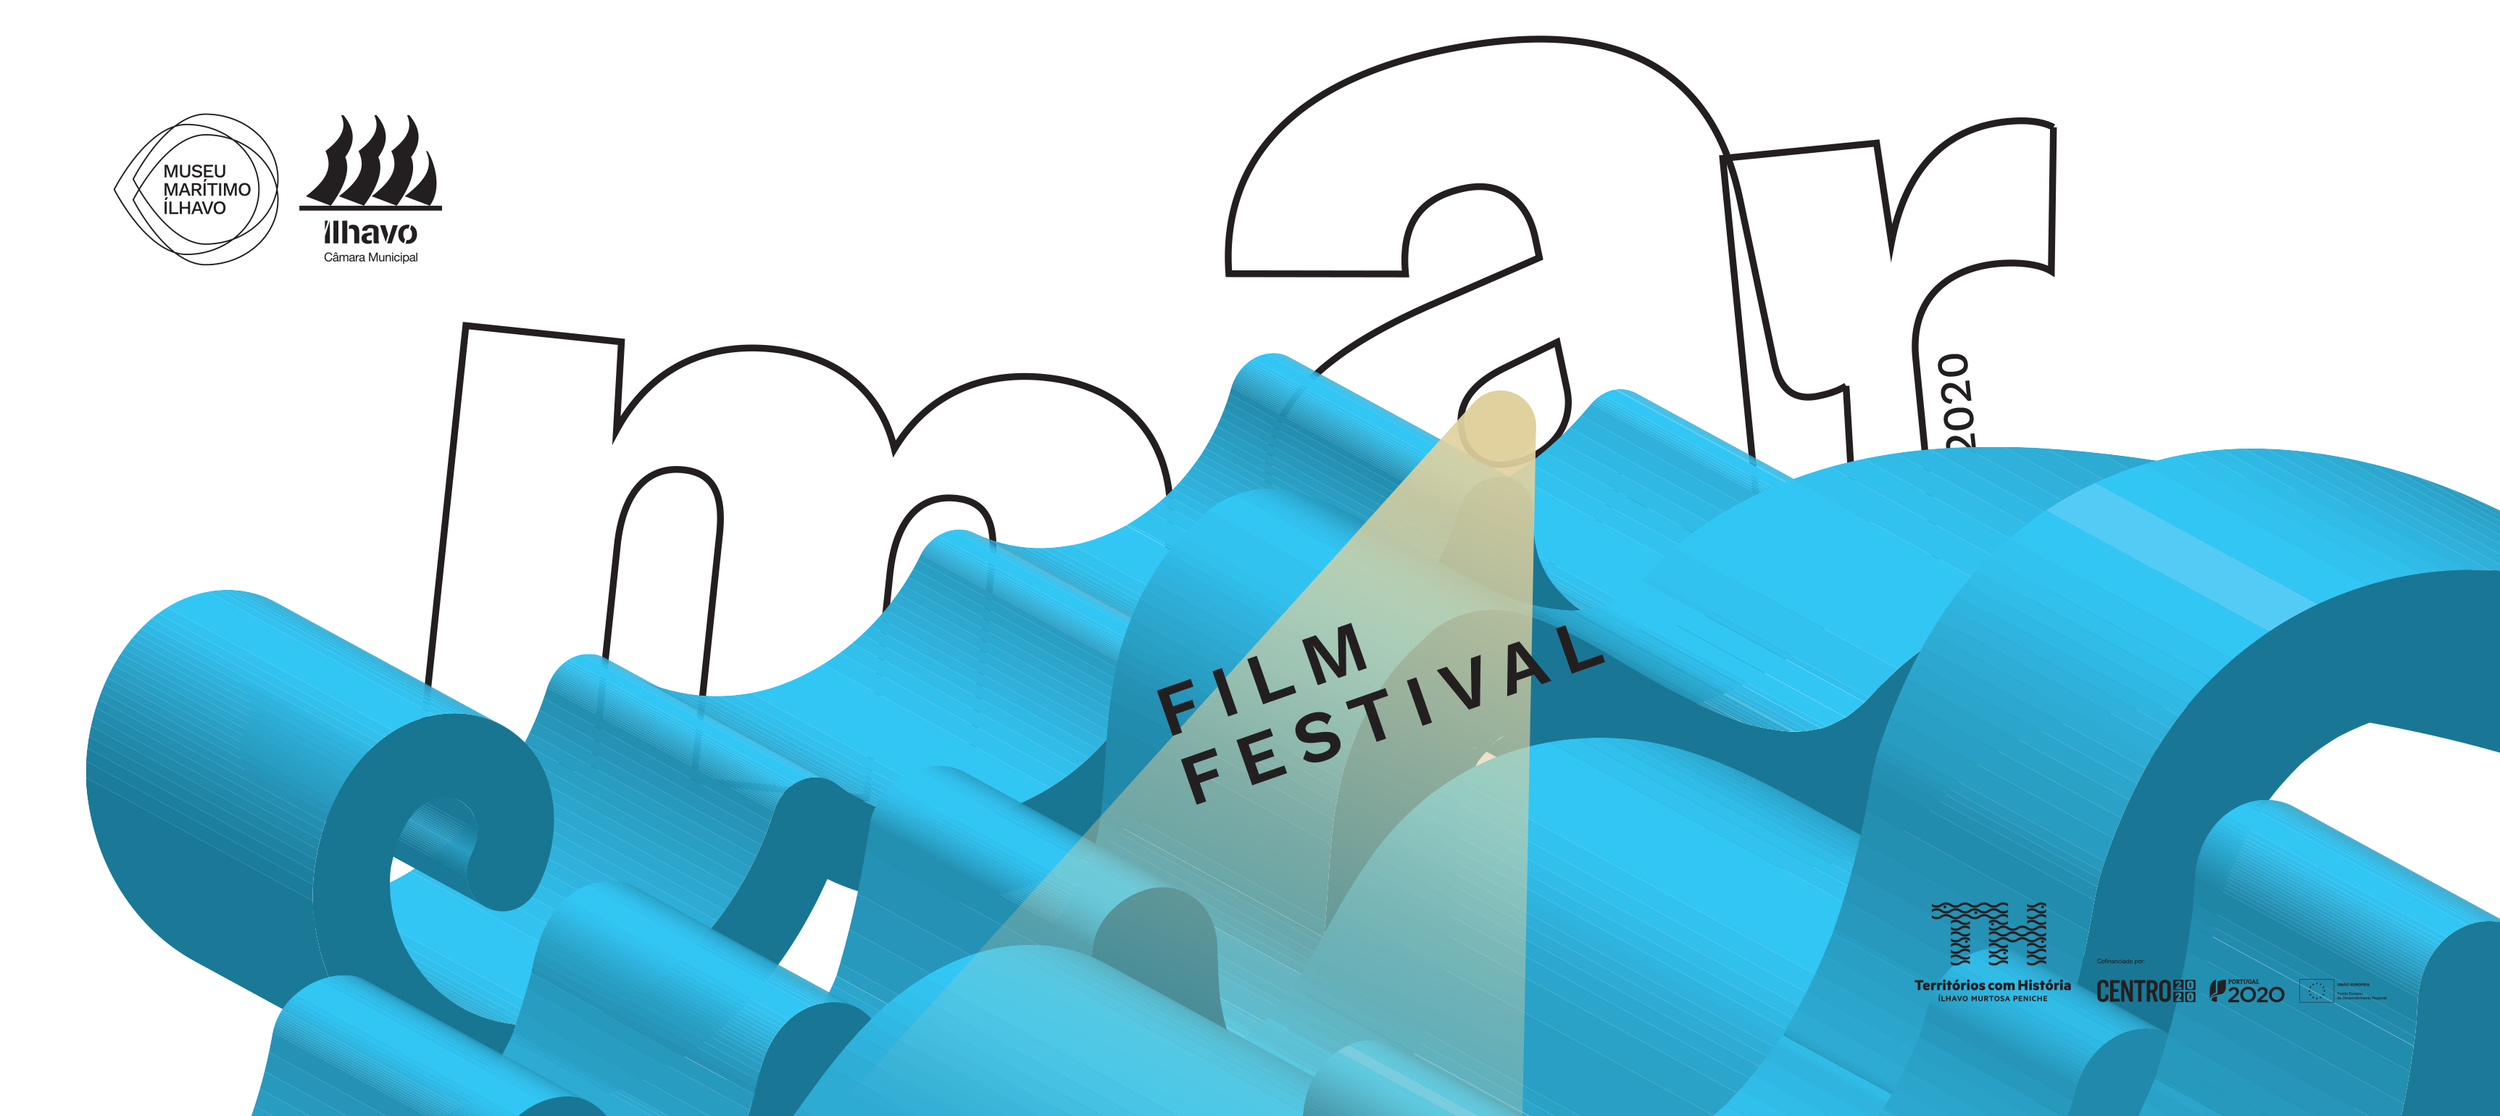 Adiada programação do último fim de semana do Mar Film Festival